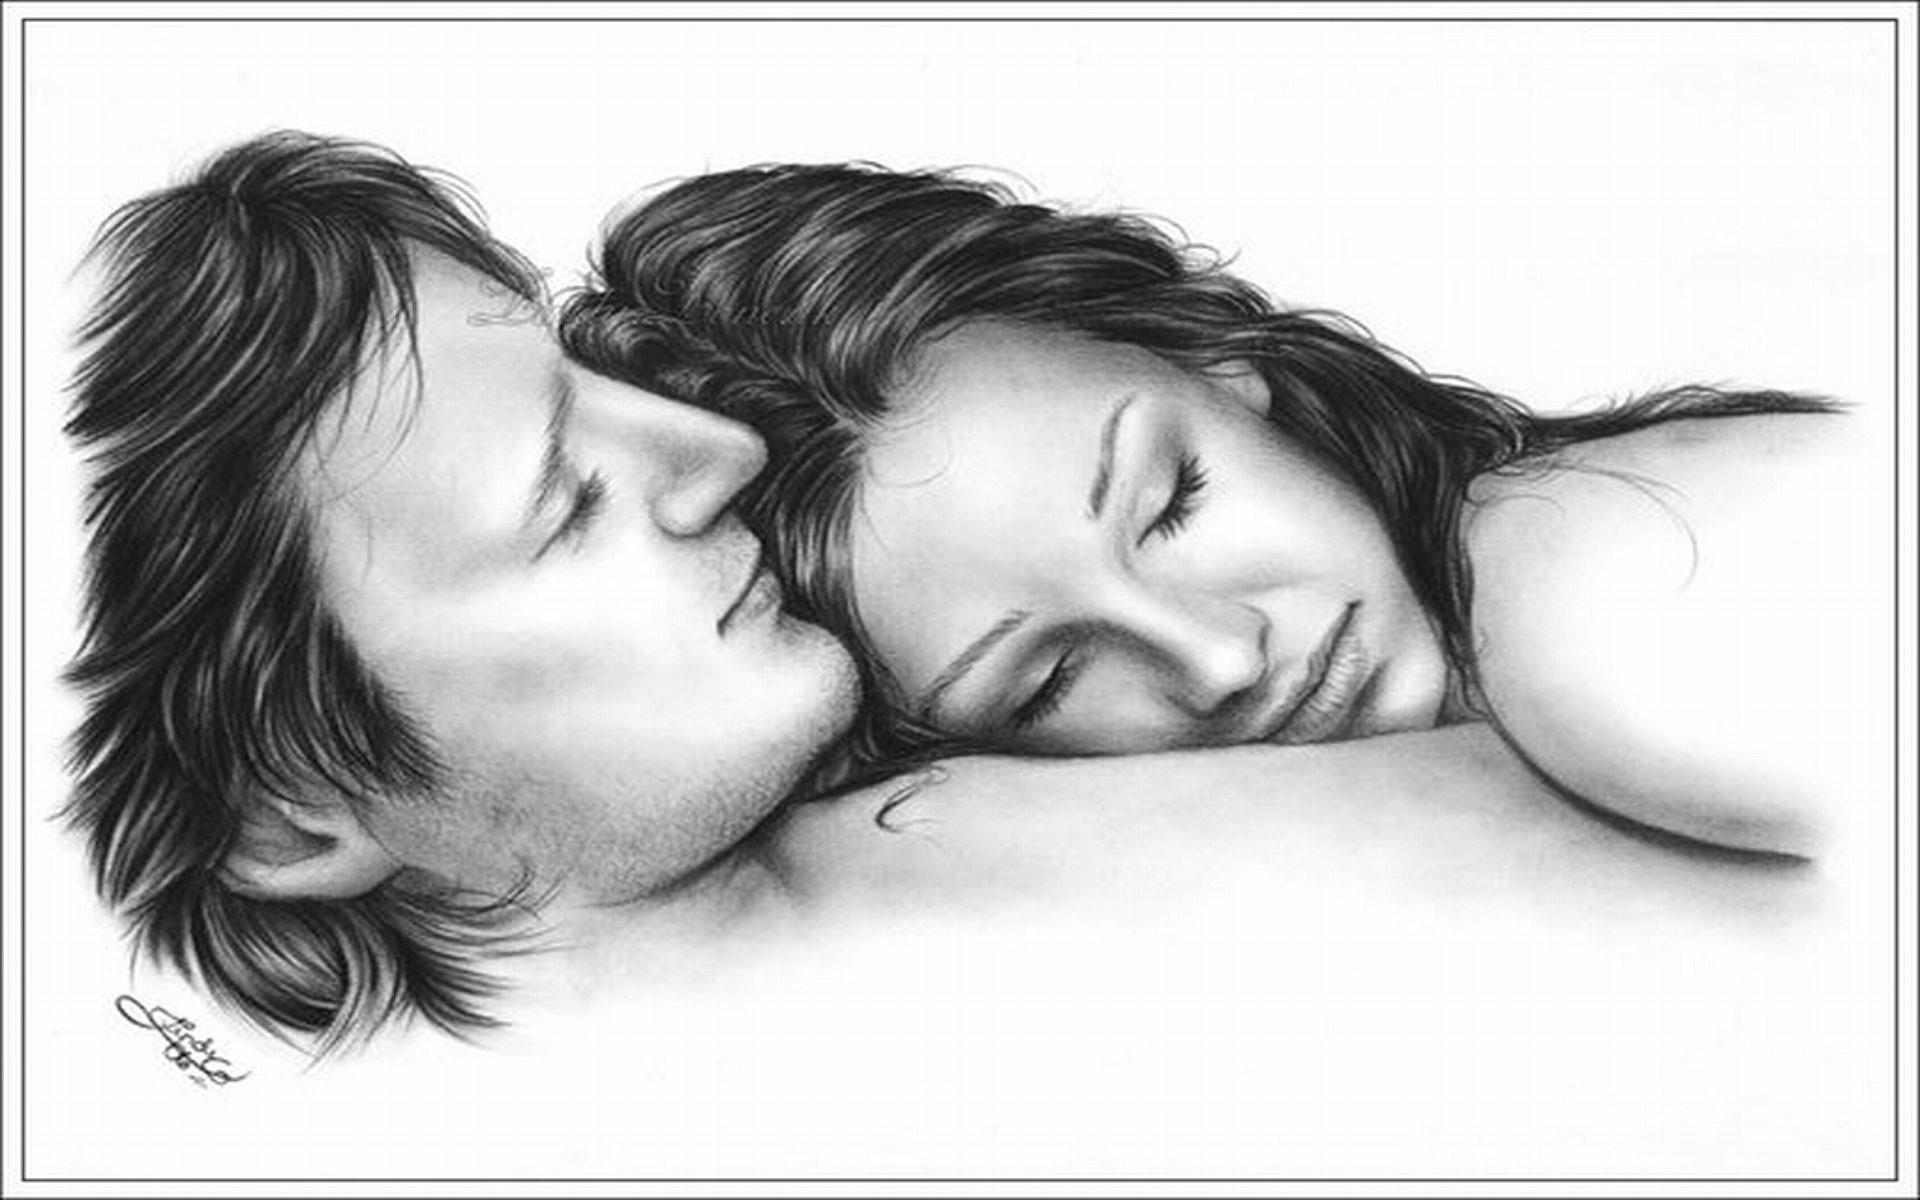 Romantic Couple Pencil Drawing Wallpaper Cute Love Drawings Pencil Art Hd R...